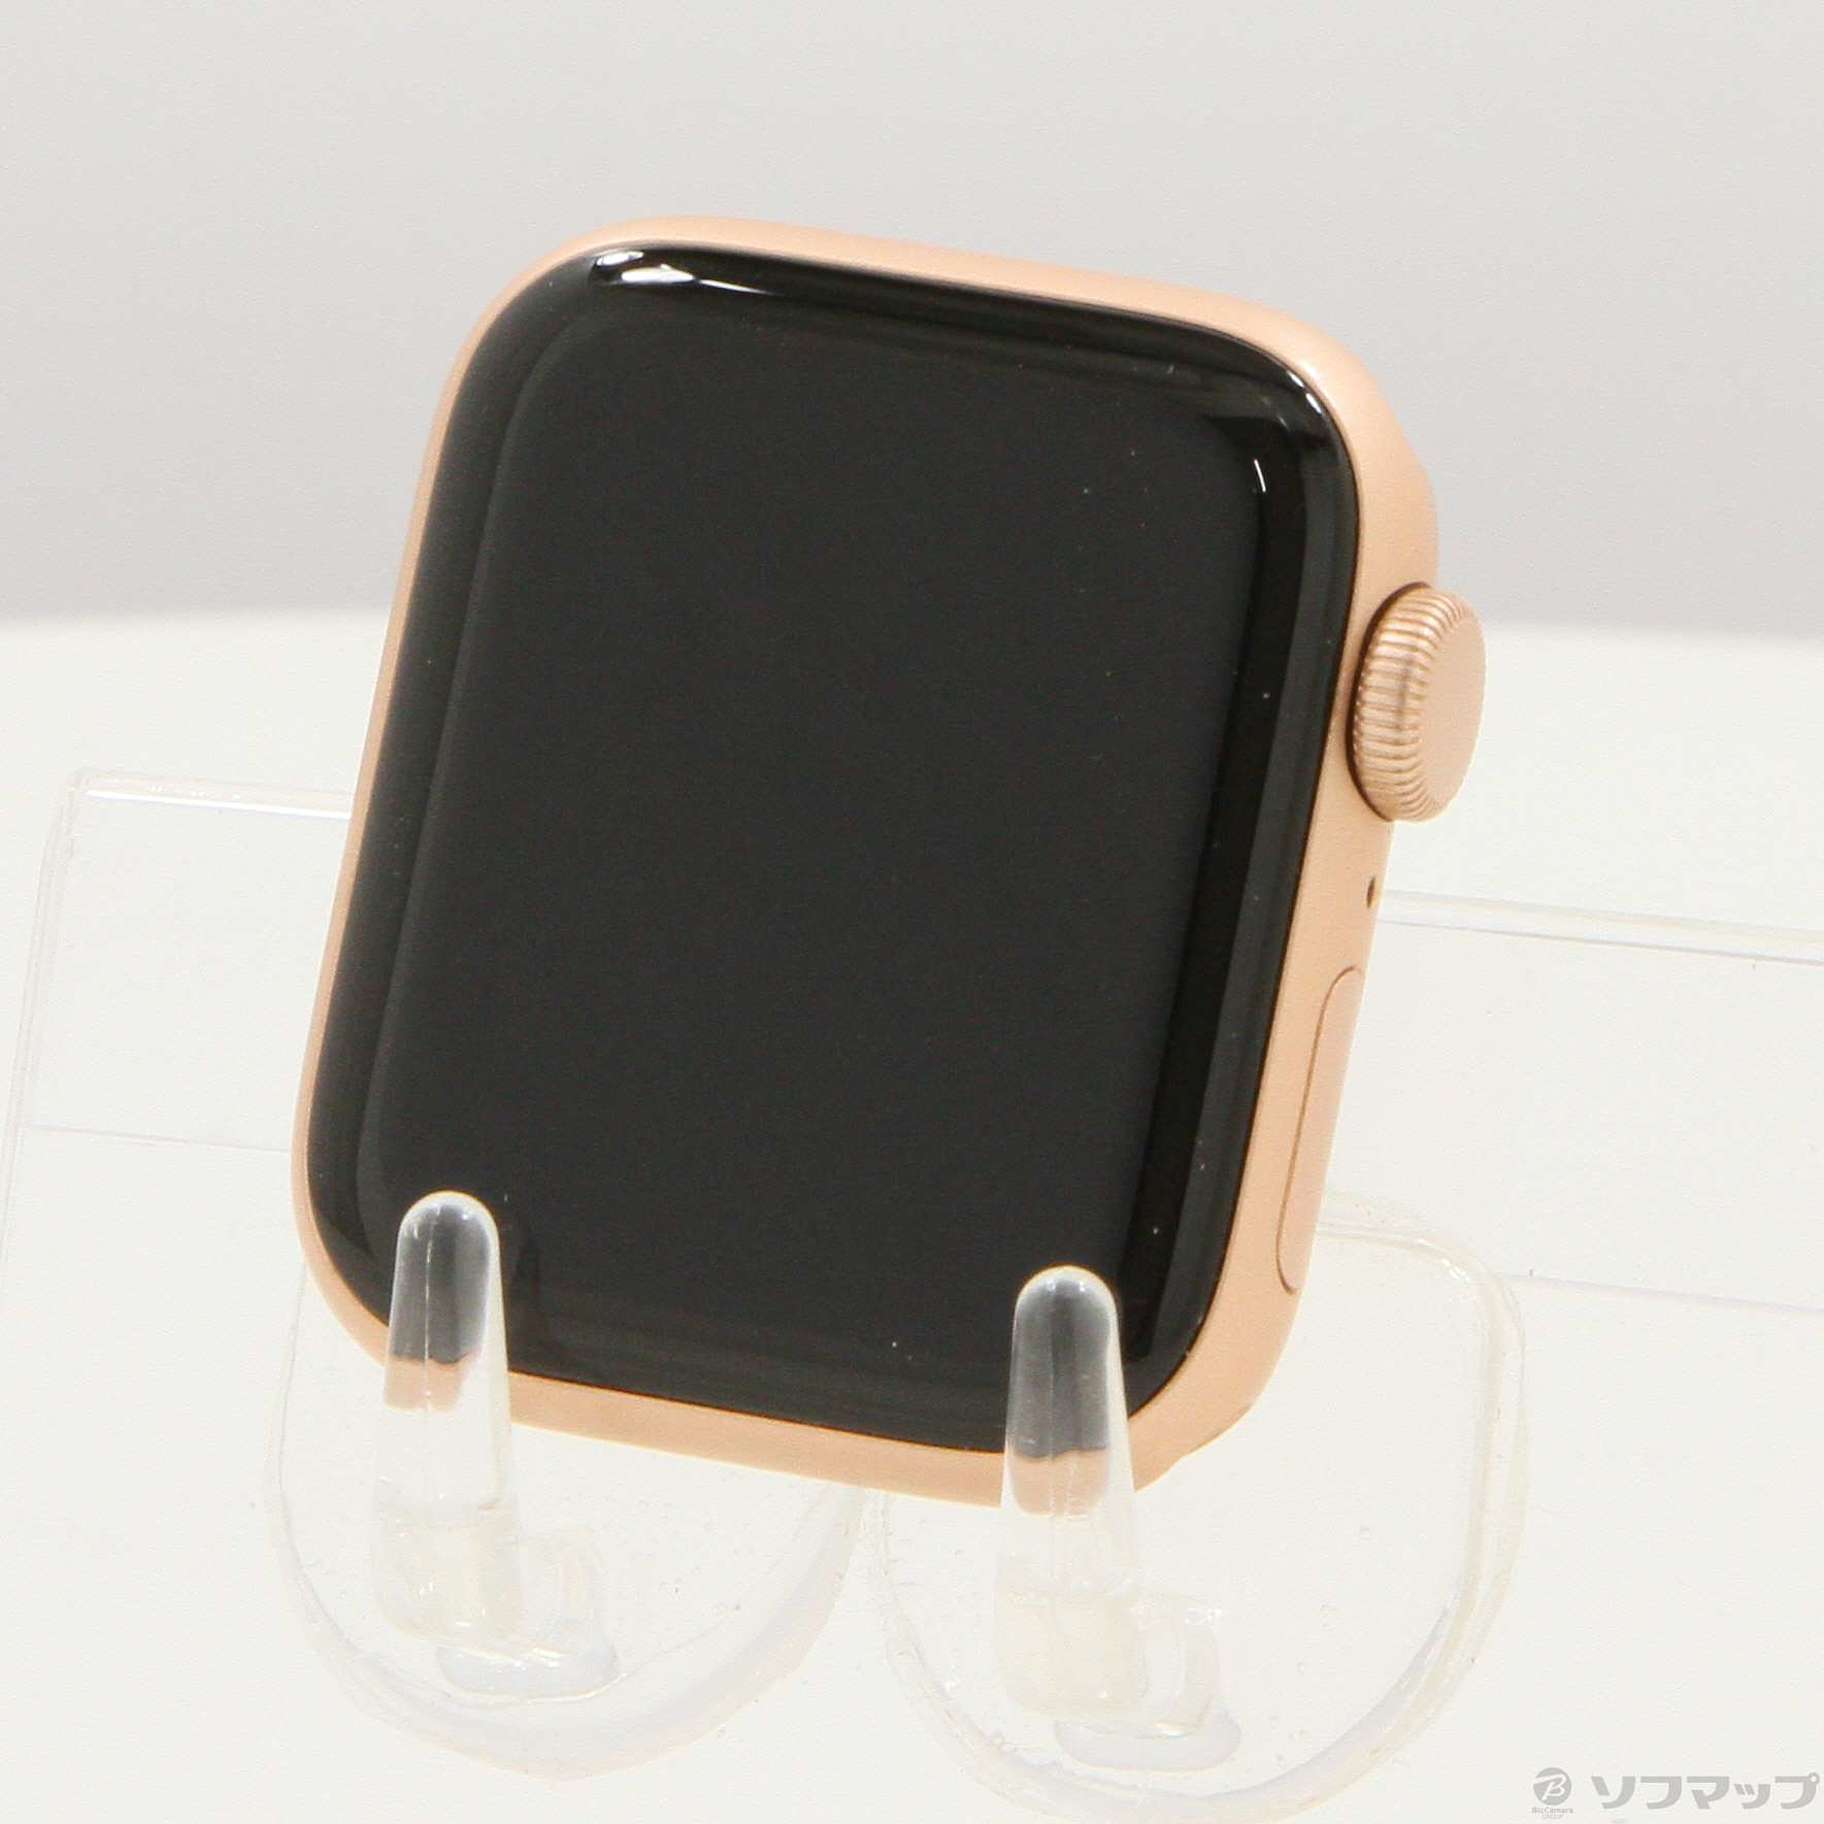 中古】Apple Watch SE 第1世代 GPS 40mm ゴールドアルミニウムケース